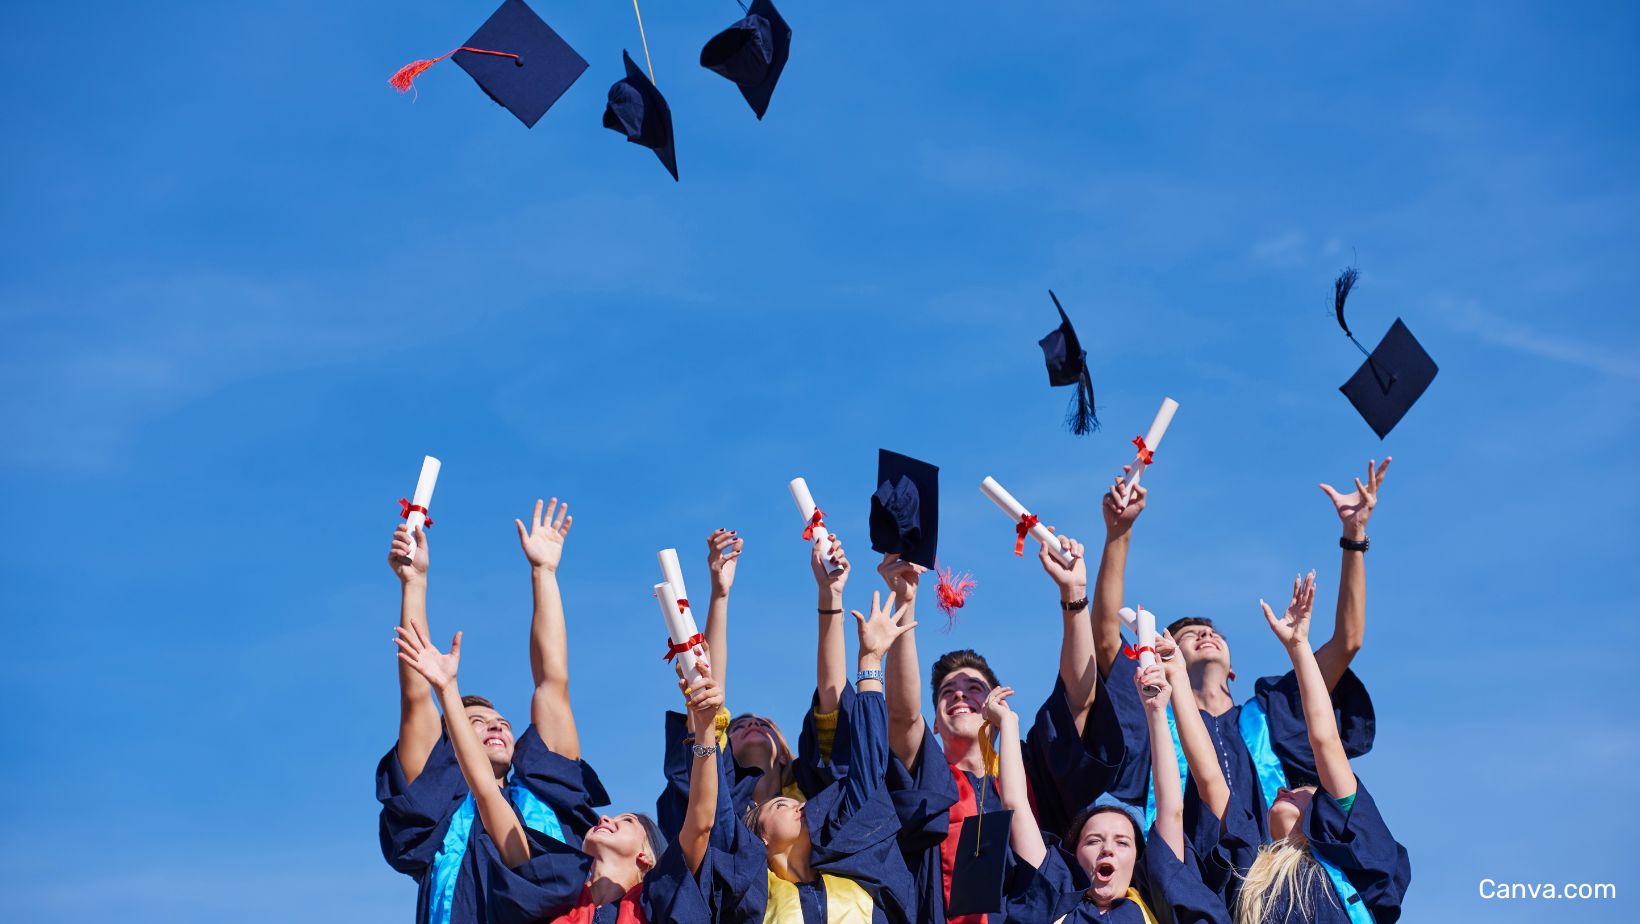 groupe de jeunes diplomé.e.s lançant leur chapeau en l'air et agitant leurs diplômes.